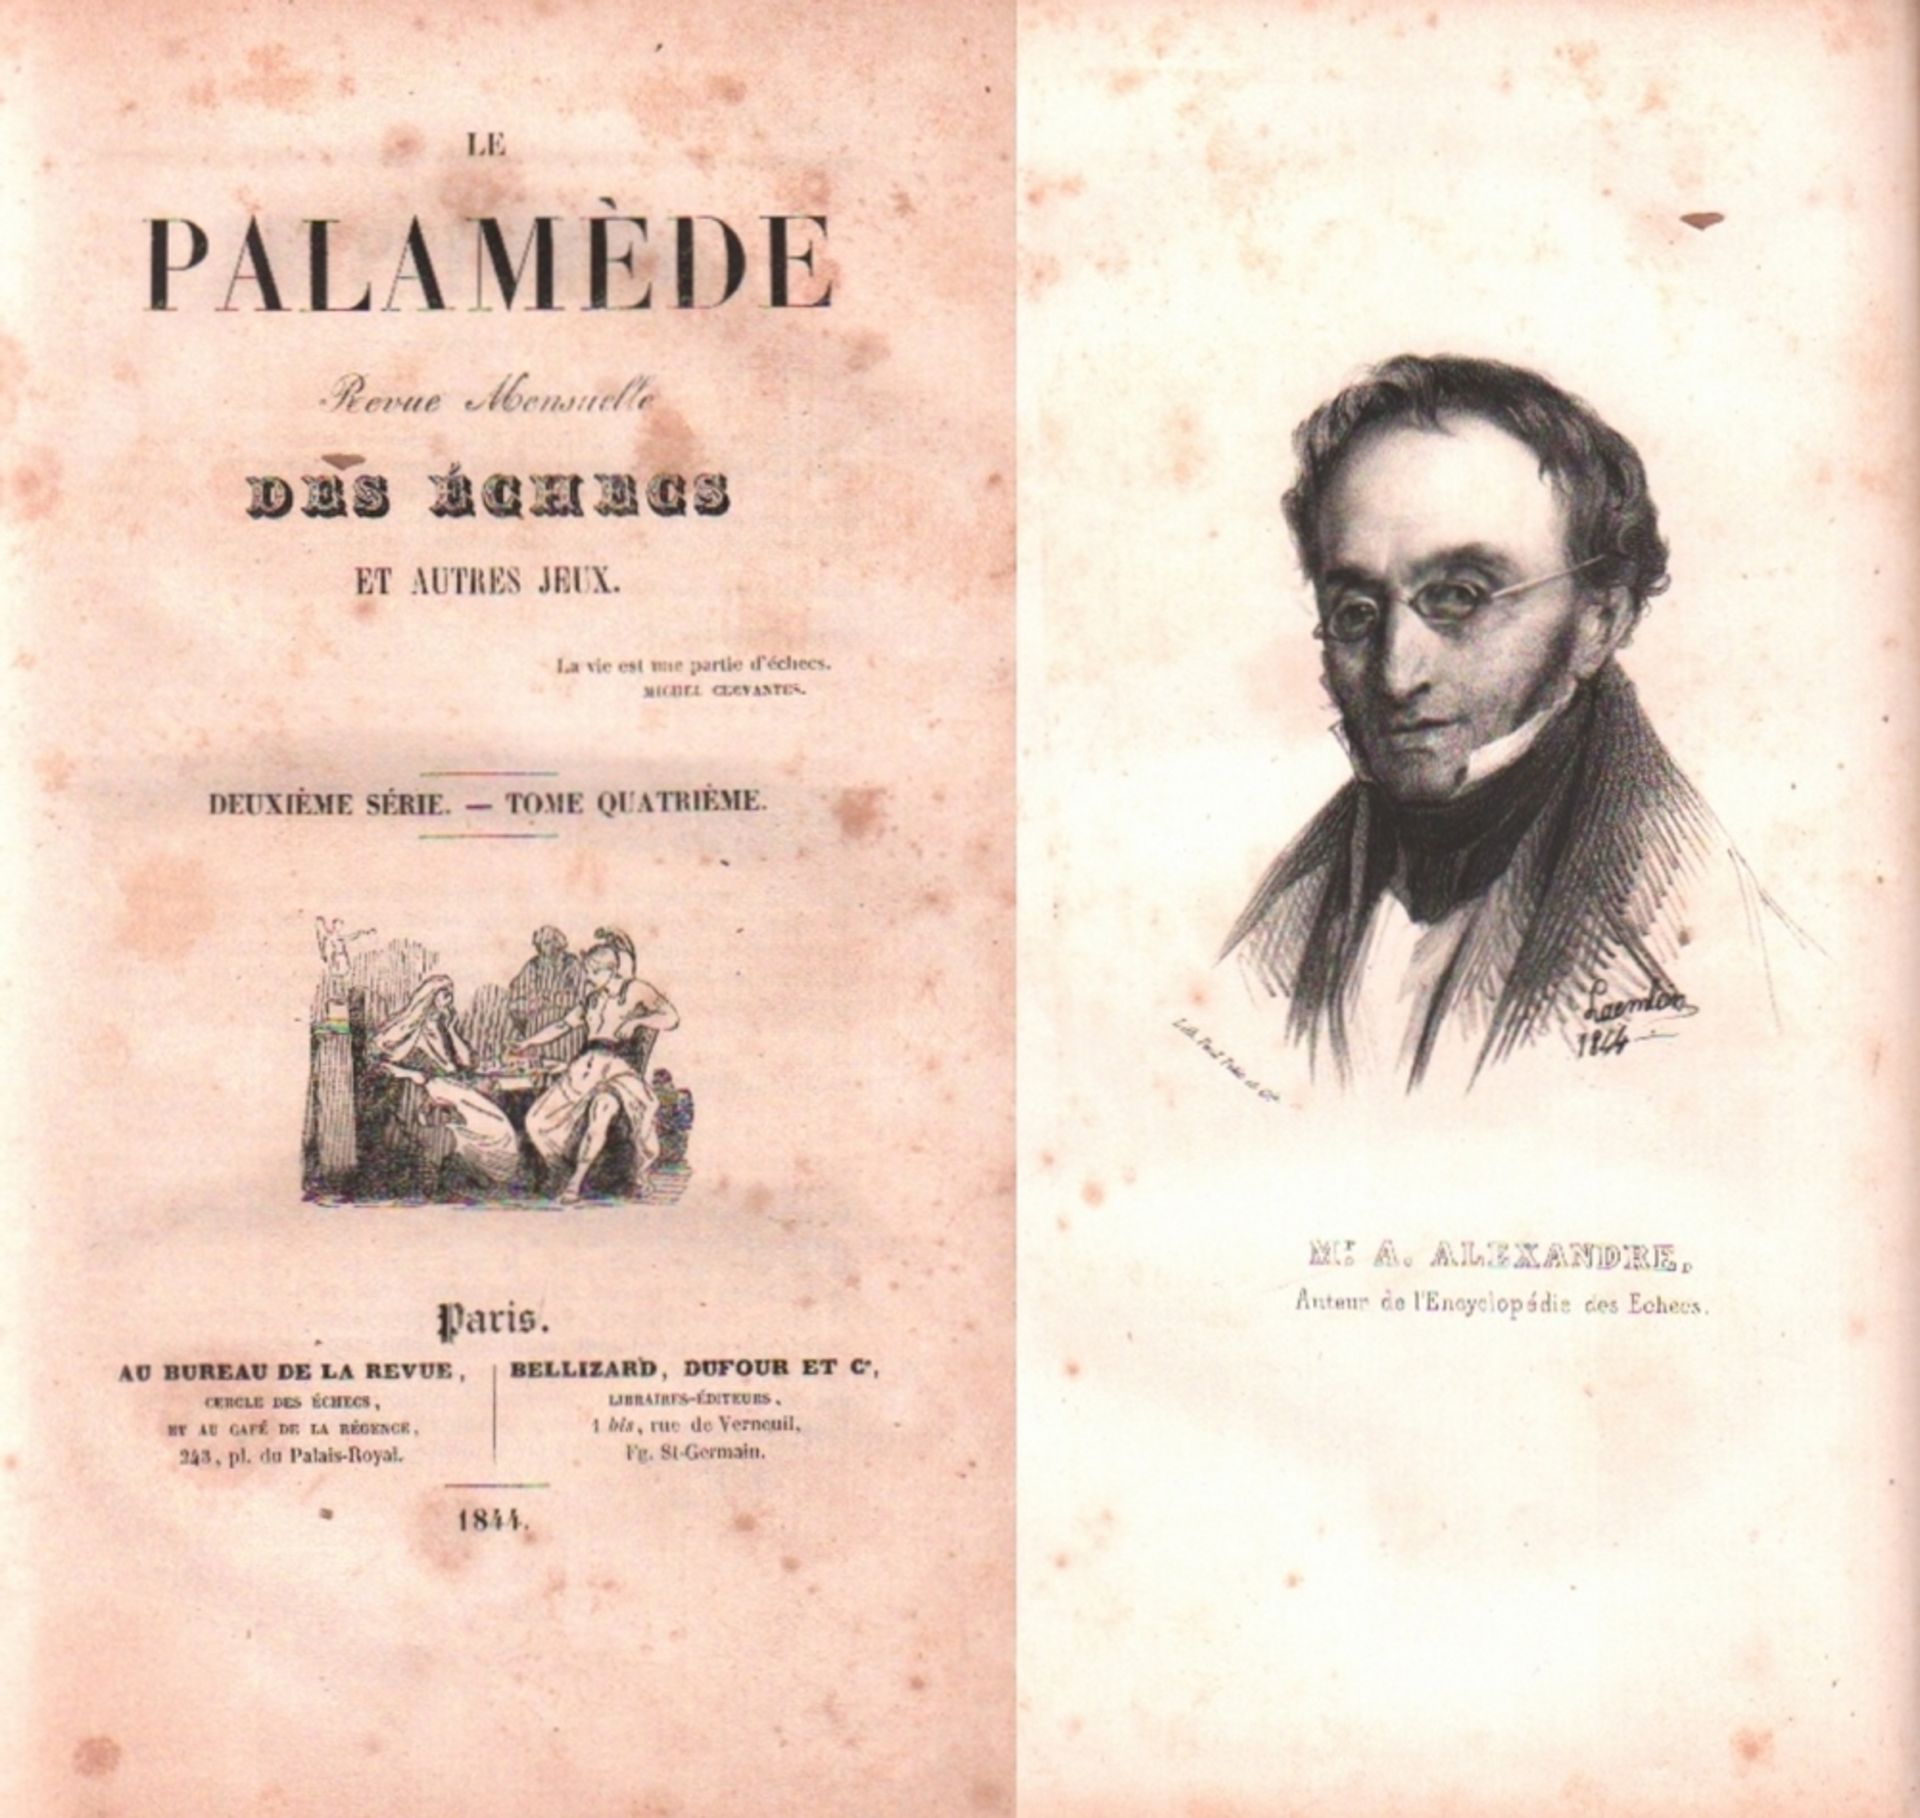 Le Palamède. Revue Mensuelle des Echecs et autres Jeux. Deuxième Série. Tome Quatrième. Paris,